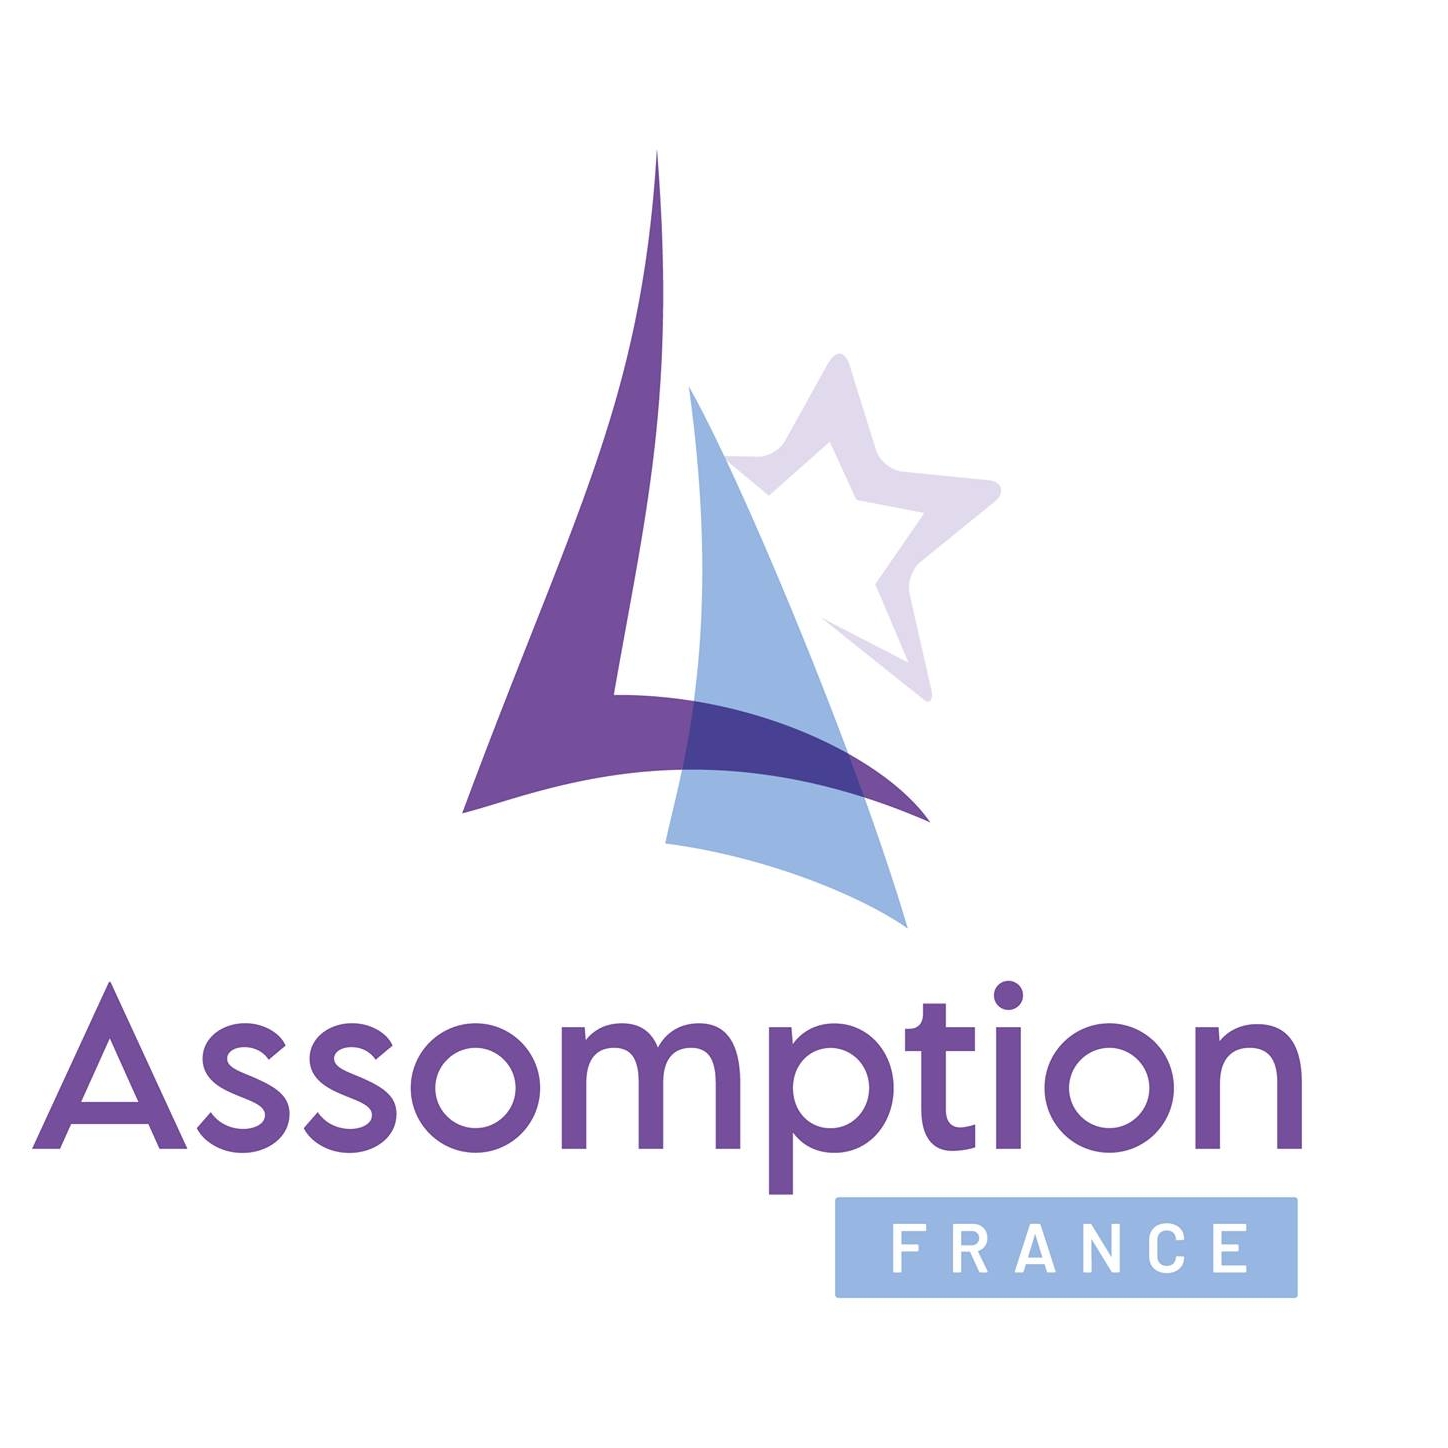 Assomption-France